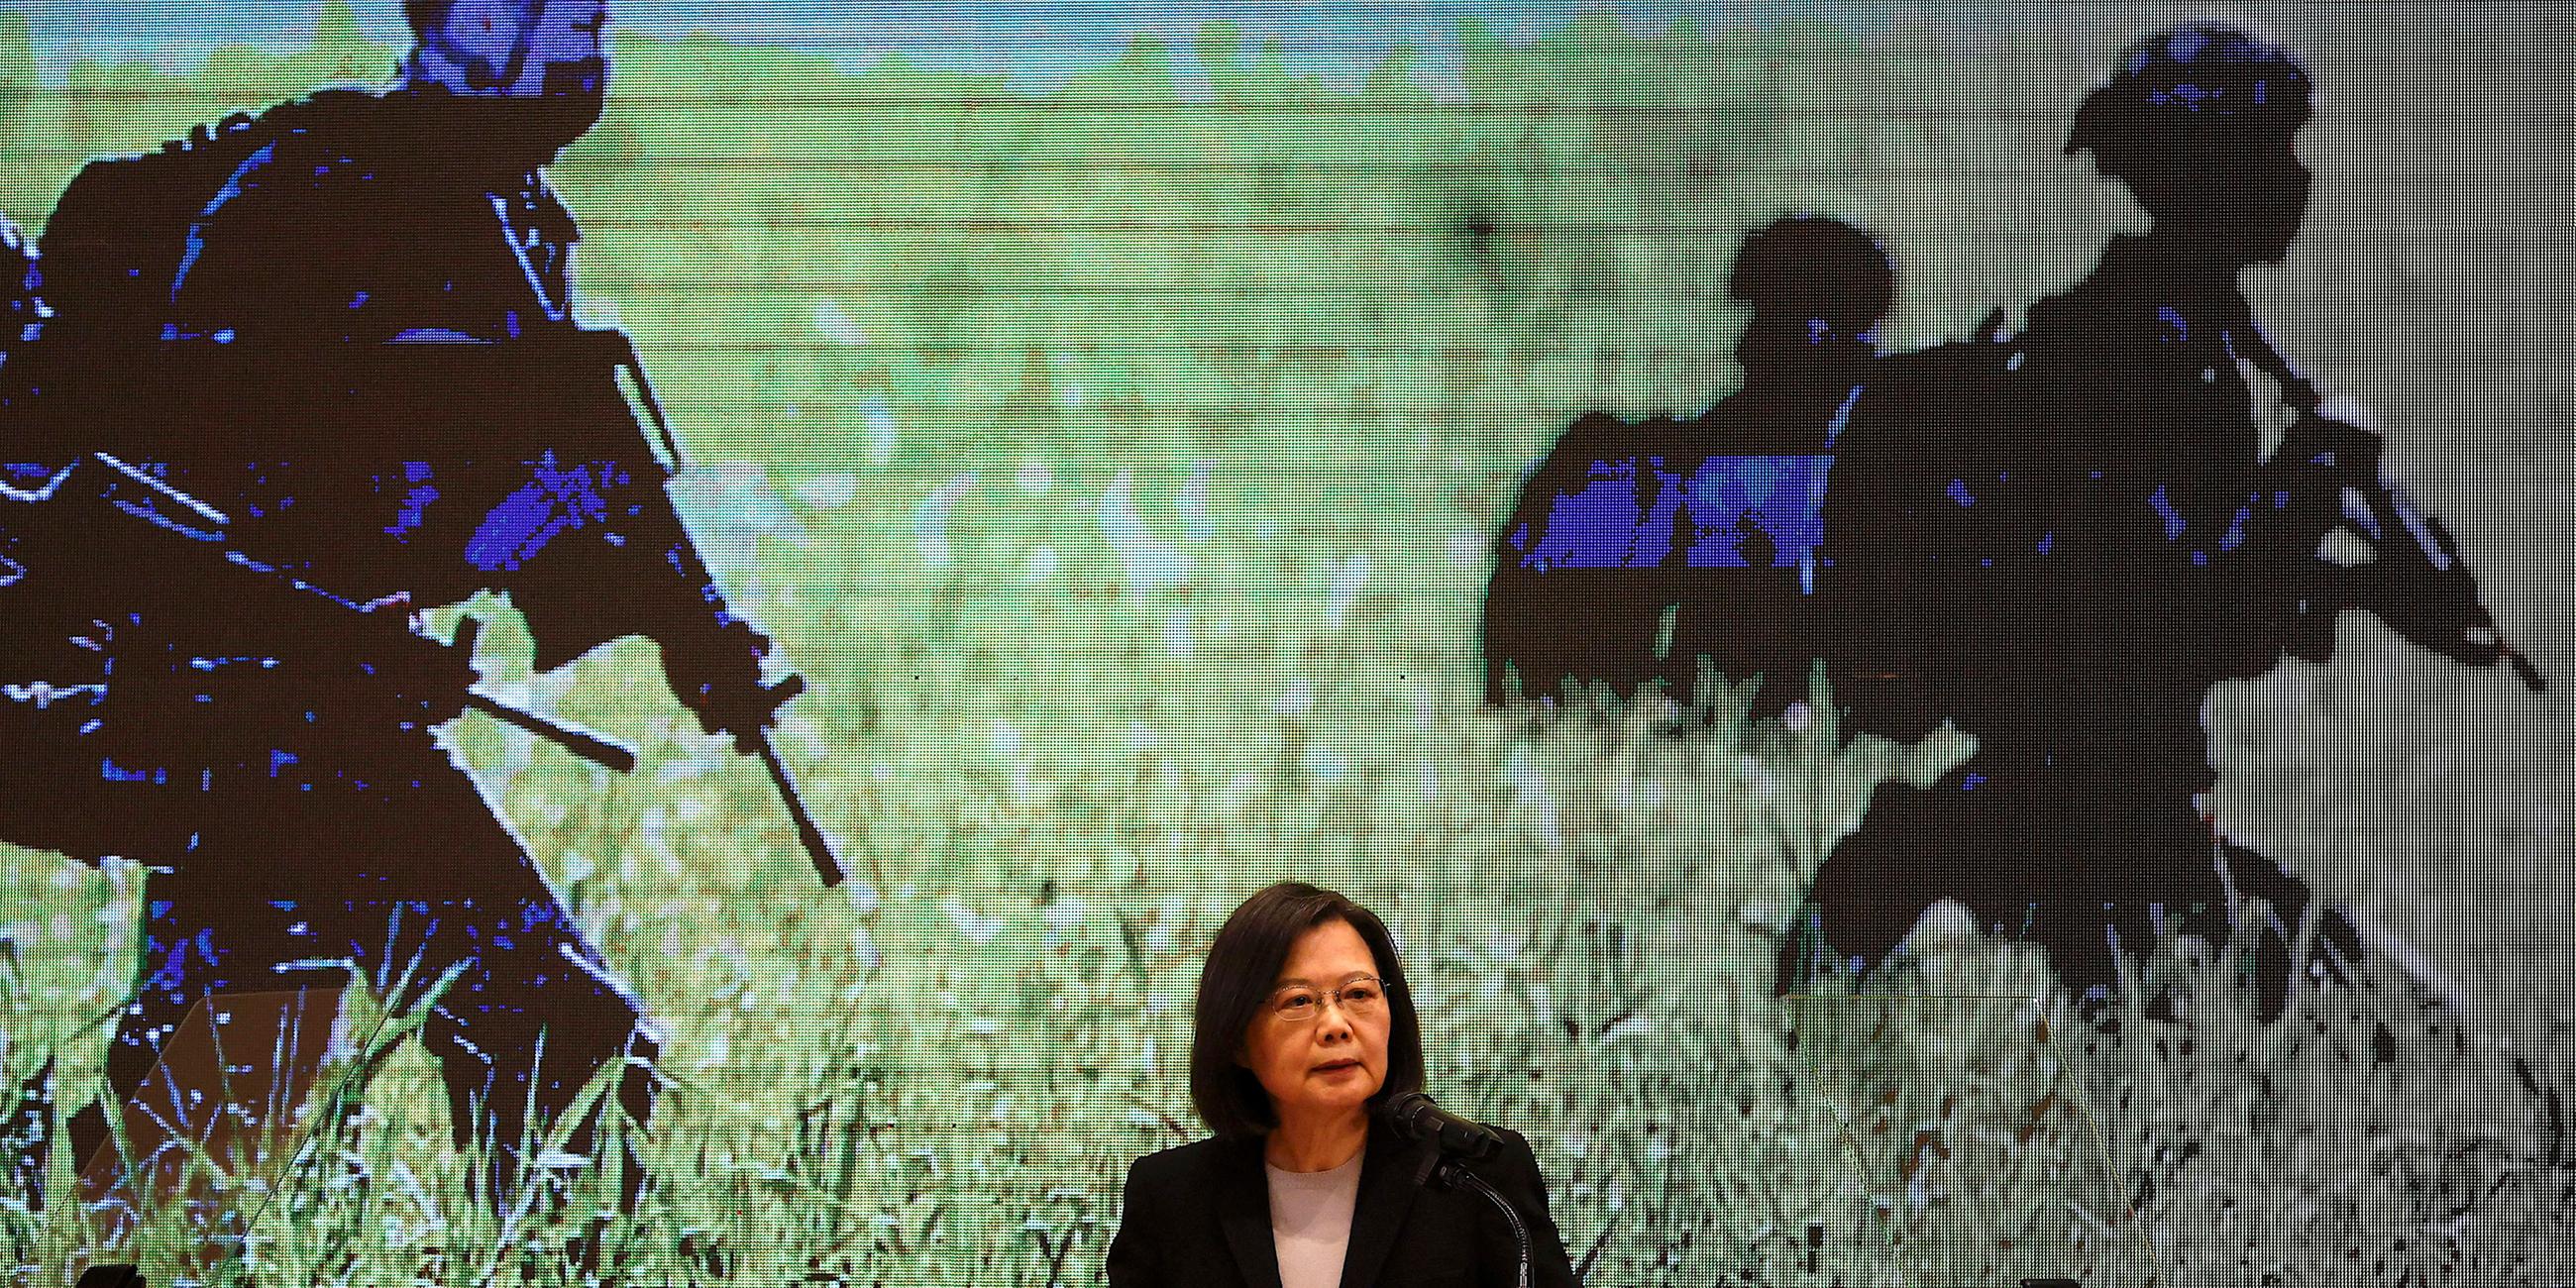 Die taiwanesische Präsidentin Tsai Ing-wen spricht auf einer Pressekonferenz